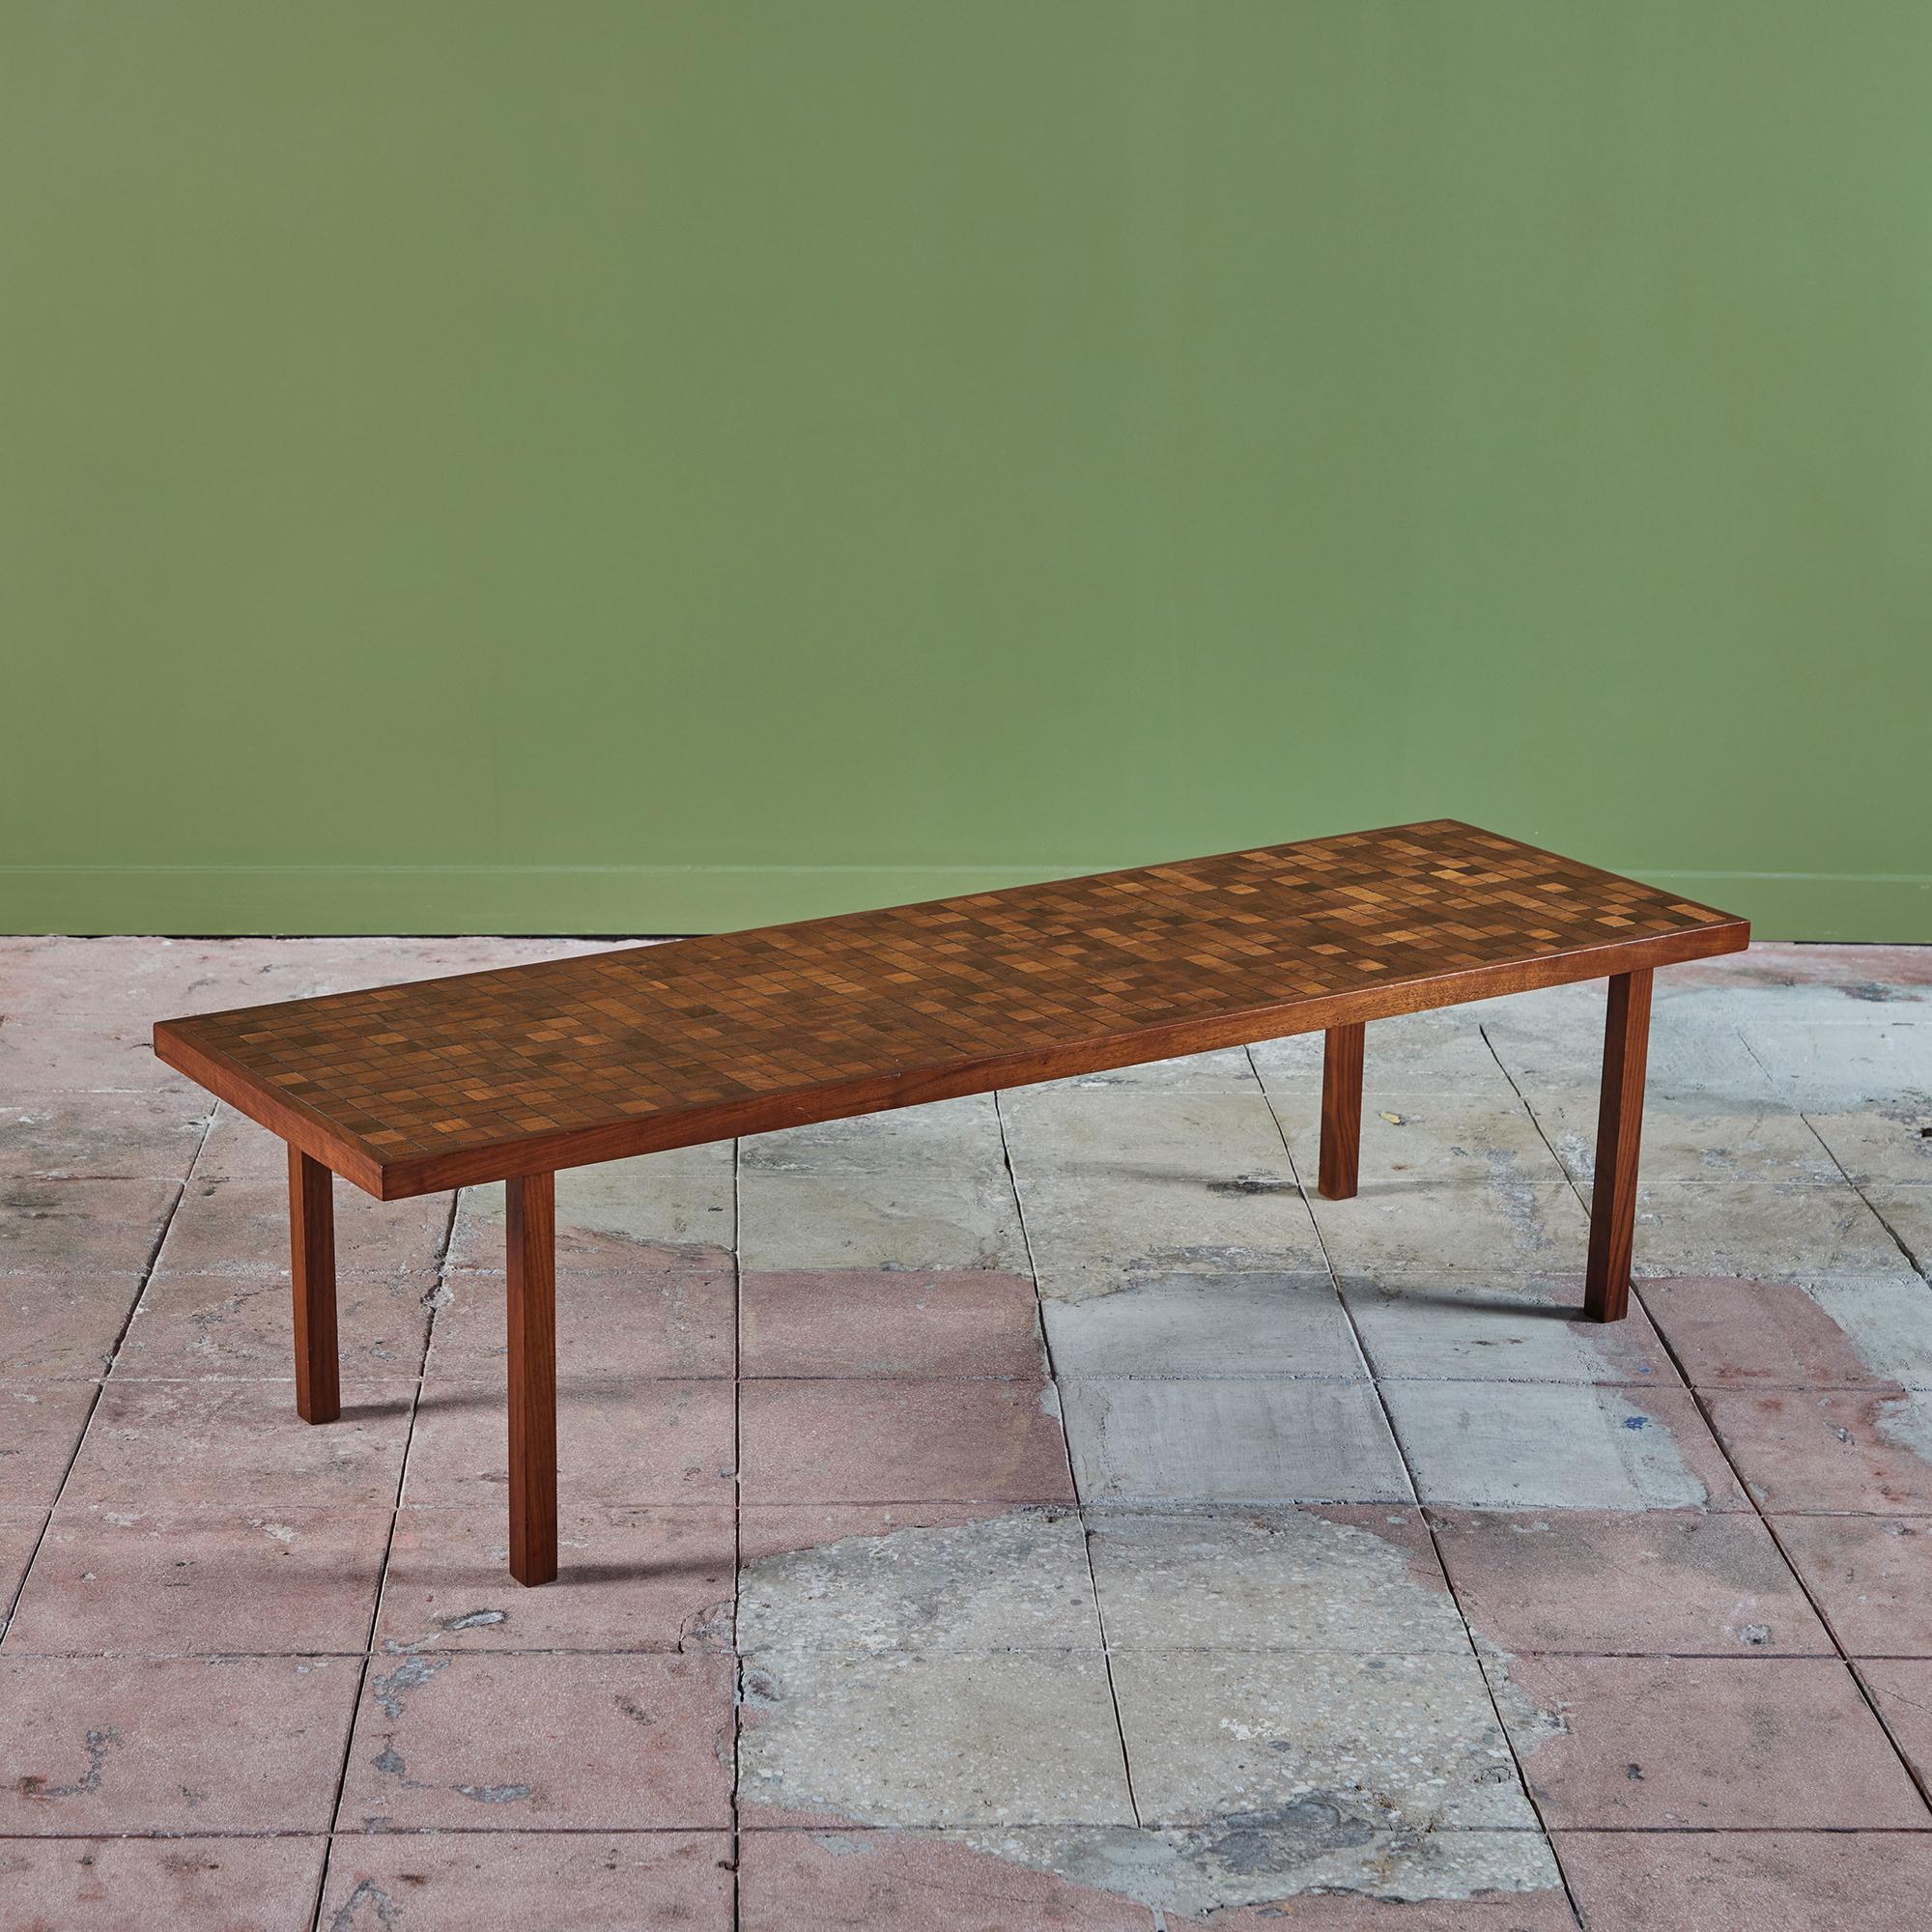 Rechteckiger Couchtisch aus Walnussholz von Gordon & Jane Martz. Die Tischplatte ist mit quadratischen Fliesen in einem geometrischen Muster eingelegt. Die Fliesen weisen unterschiedliche Holzmaserungen und Brauntöne auf. Der Rahmen und die